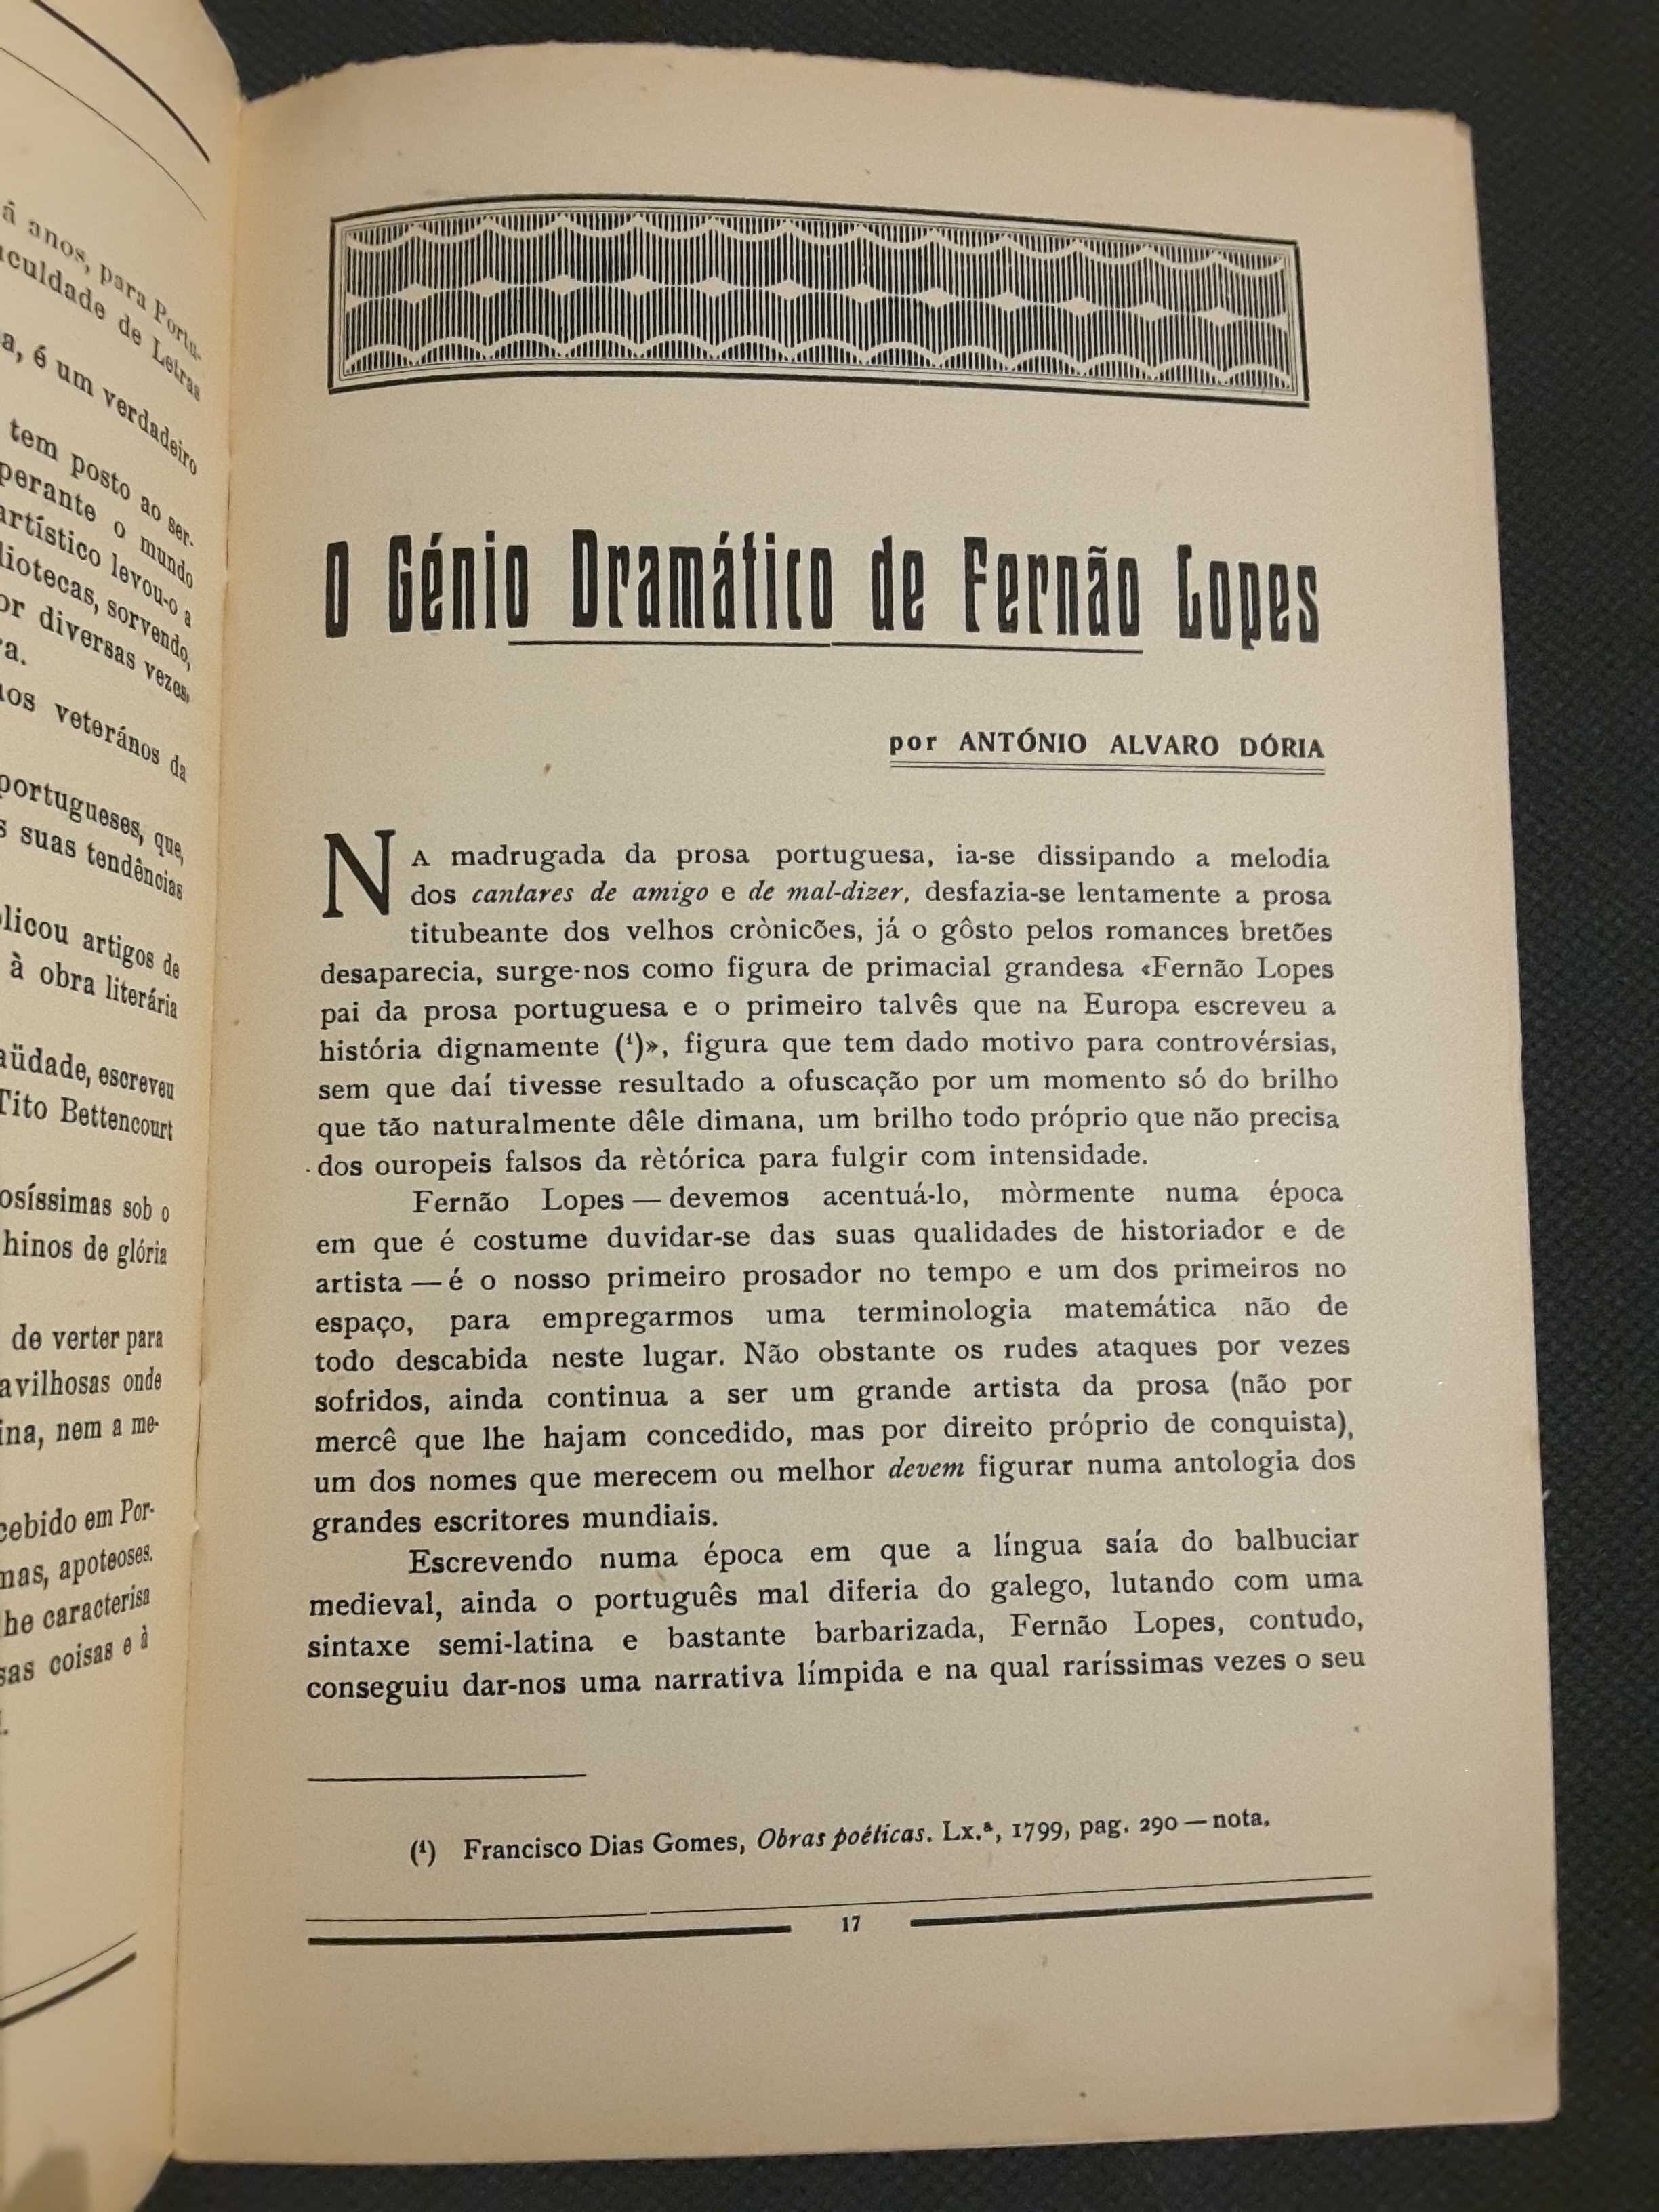 Gil Vicente, Revista Literária de Cultura Nacionalista